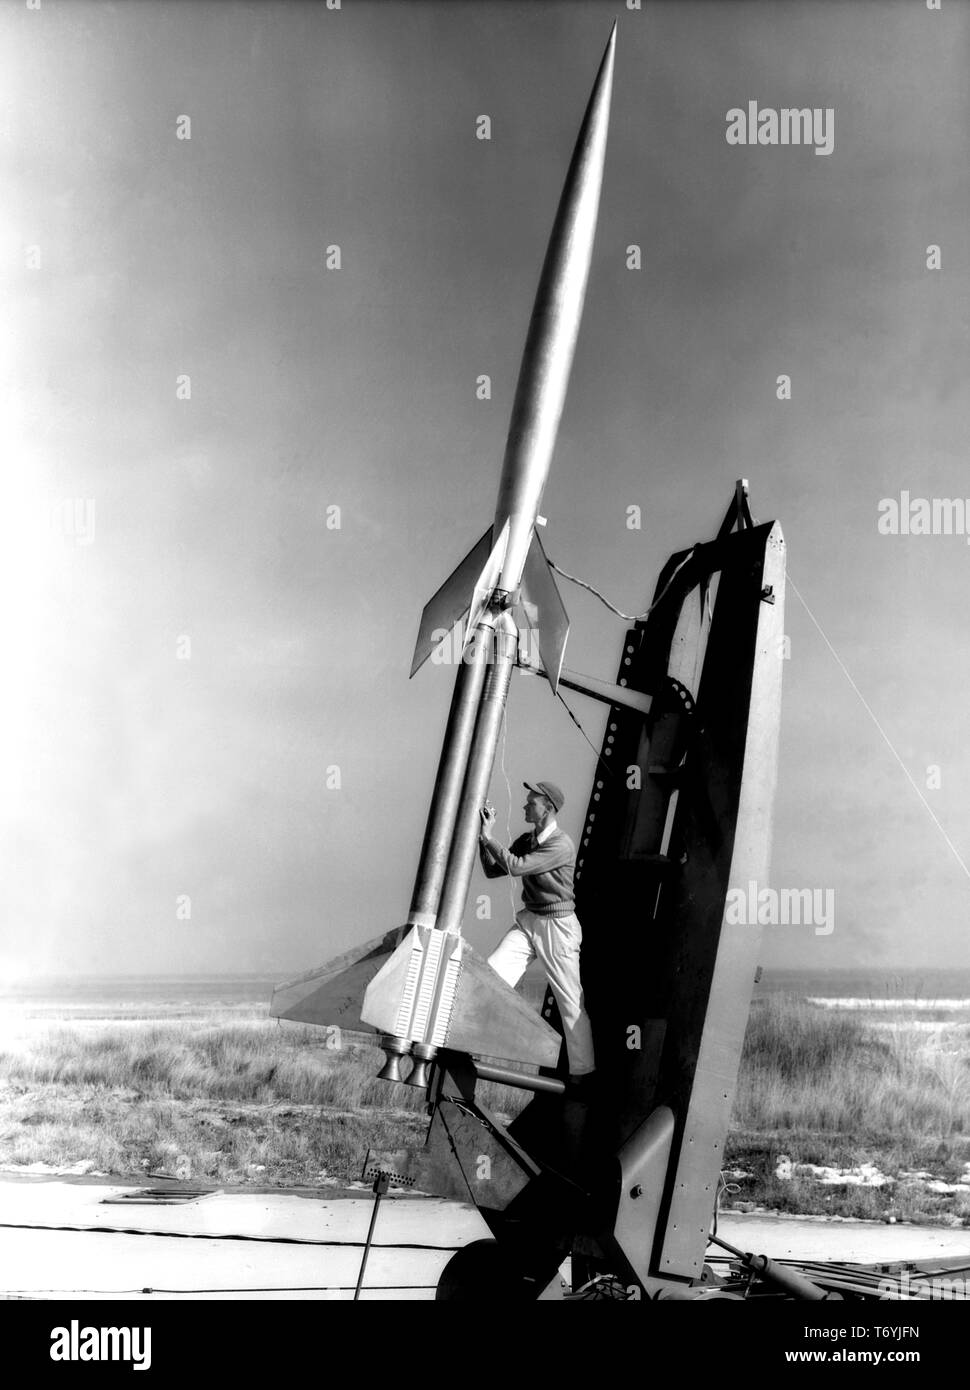 Técnico Dereng Durwood midiendo la elevación de doble diácono booster antes del lanzamiento del cohete RM-10 at Wallops Flight Facility en Virginia, 6 de febrero de 1951. Imagen cortesía de la Administración Nacional de Aeronáutica y del Espacio (NASA). () Foto de stock